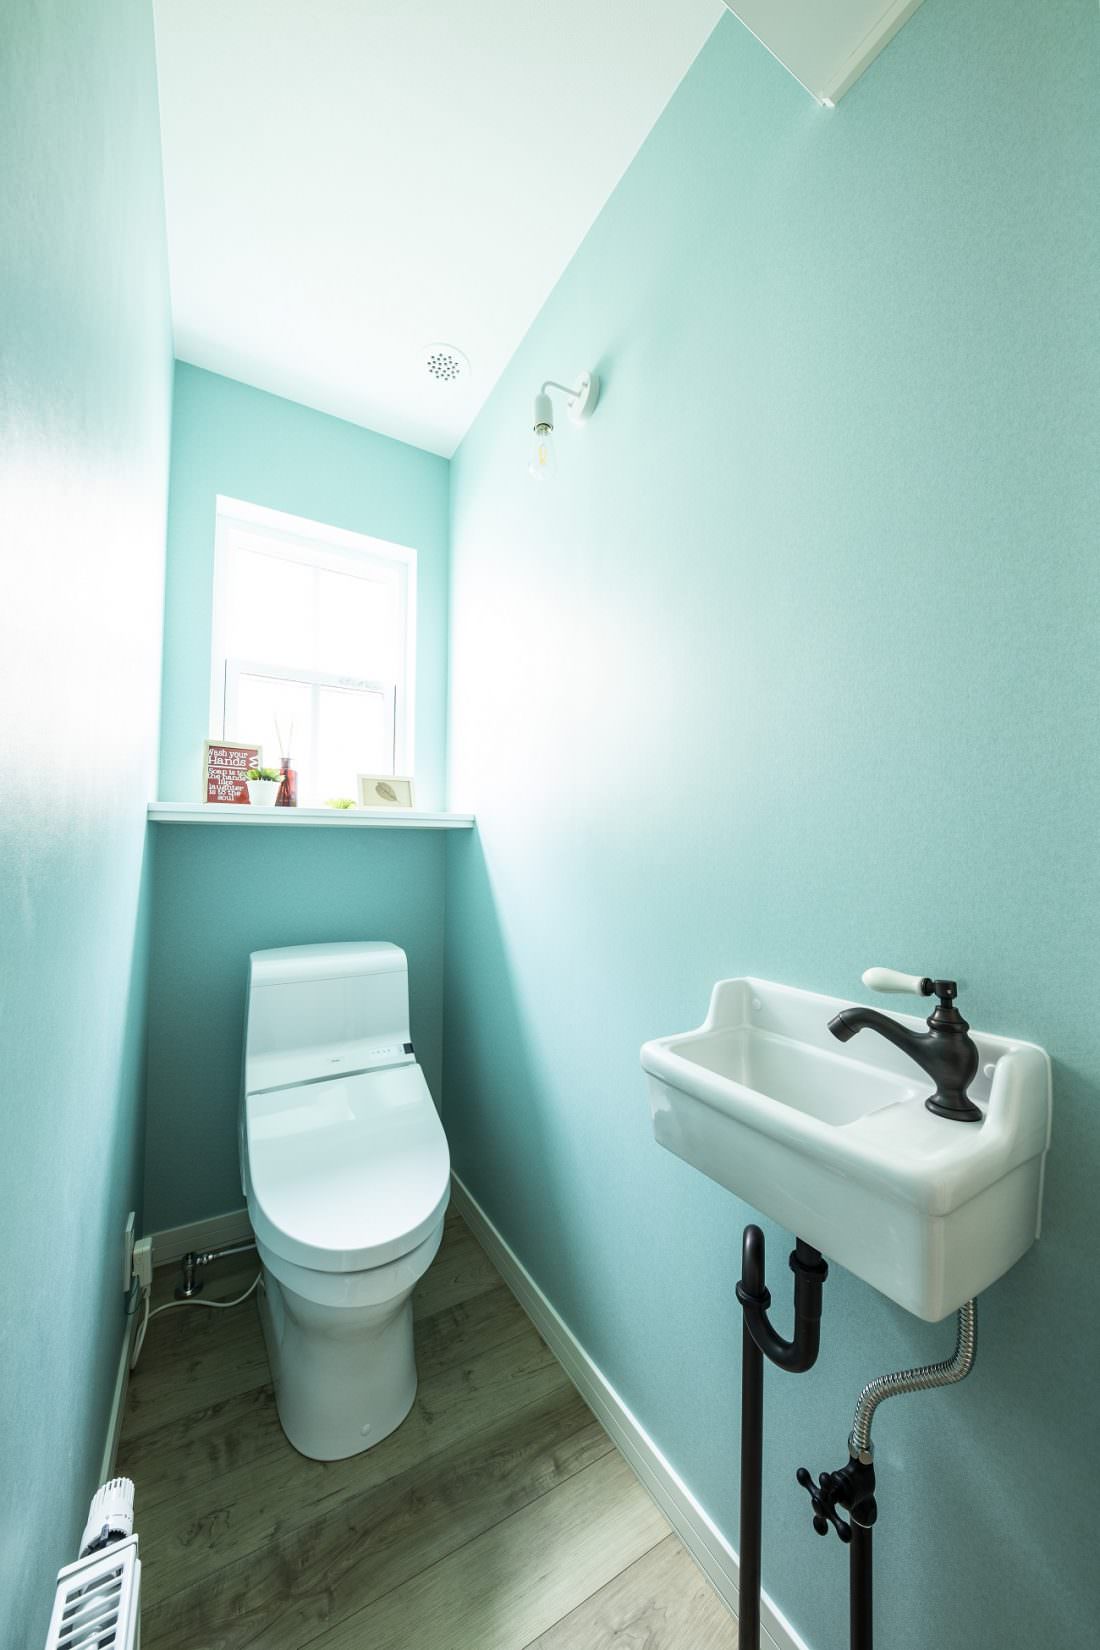 ティファニーブルーの壁紙でさわやかな印象のトイレ